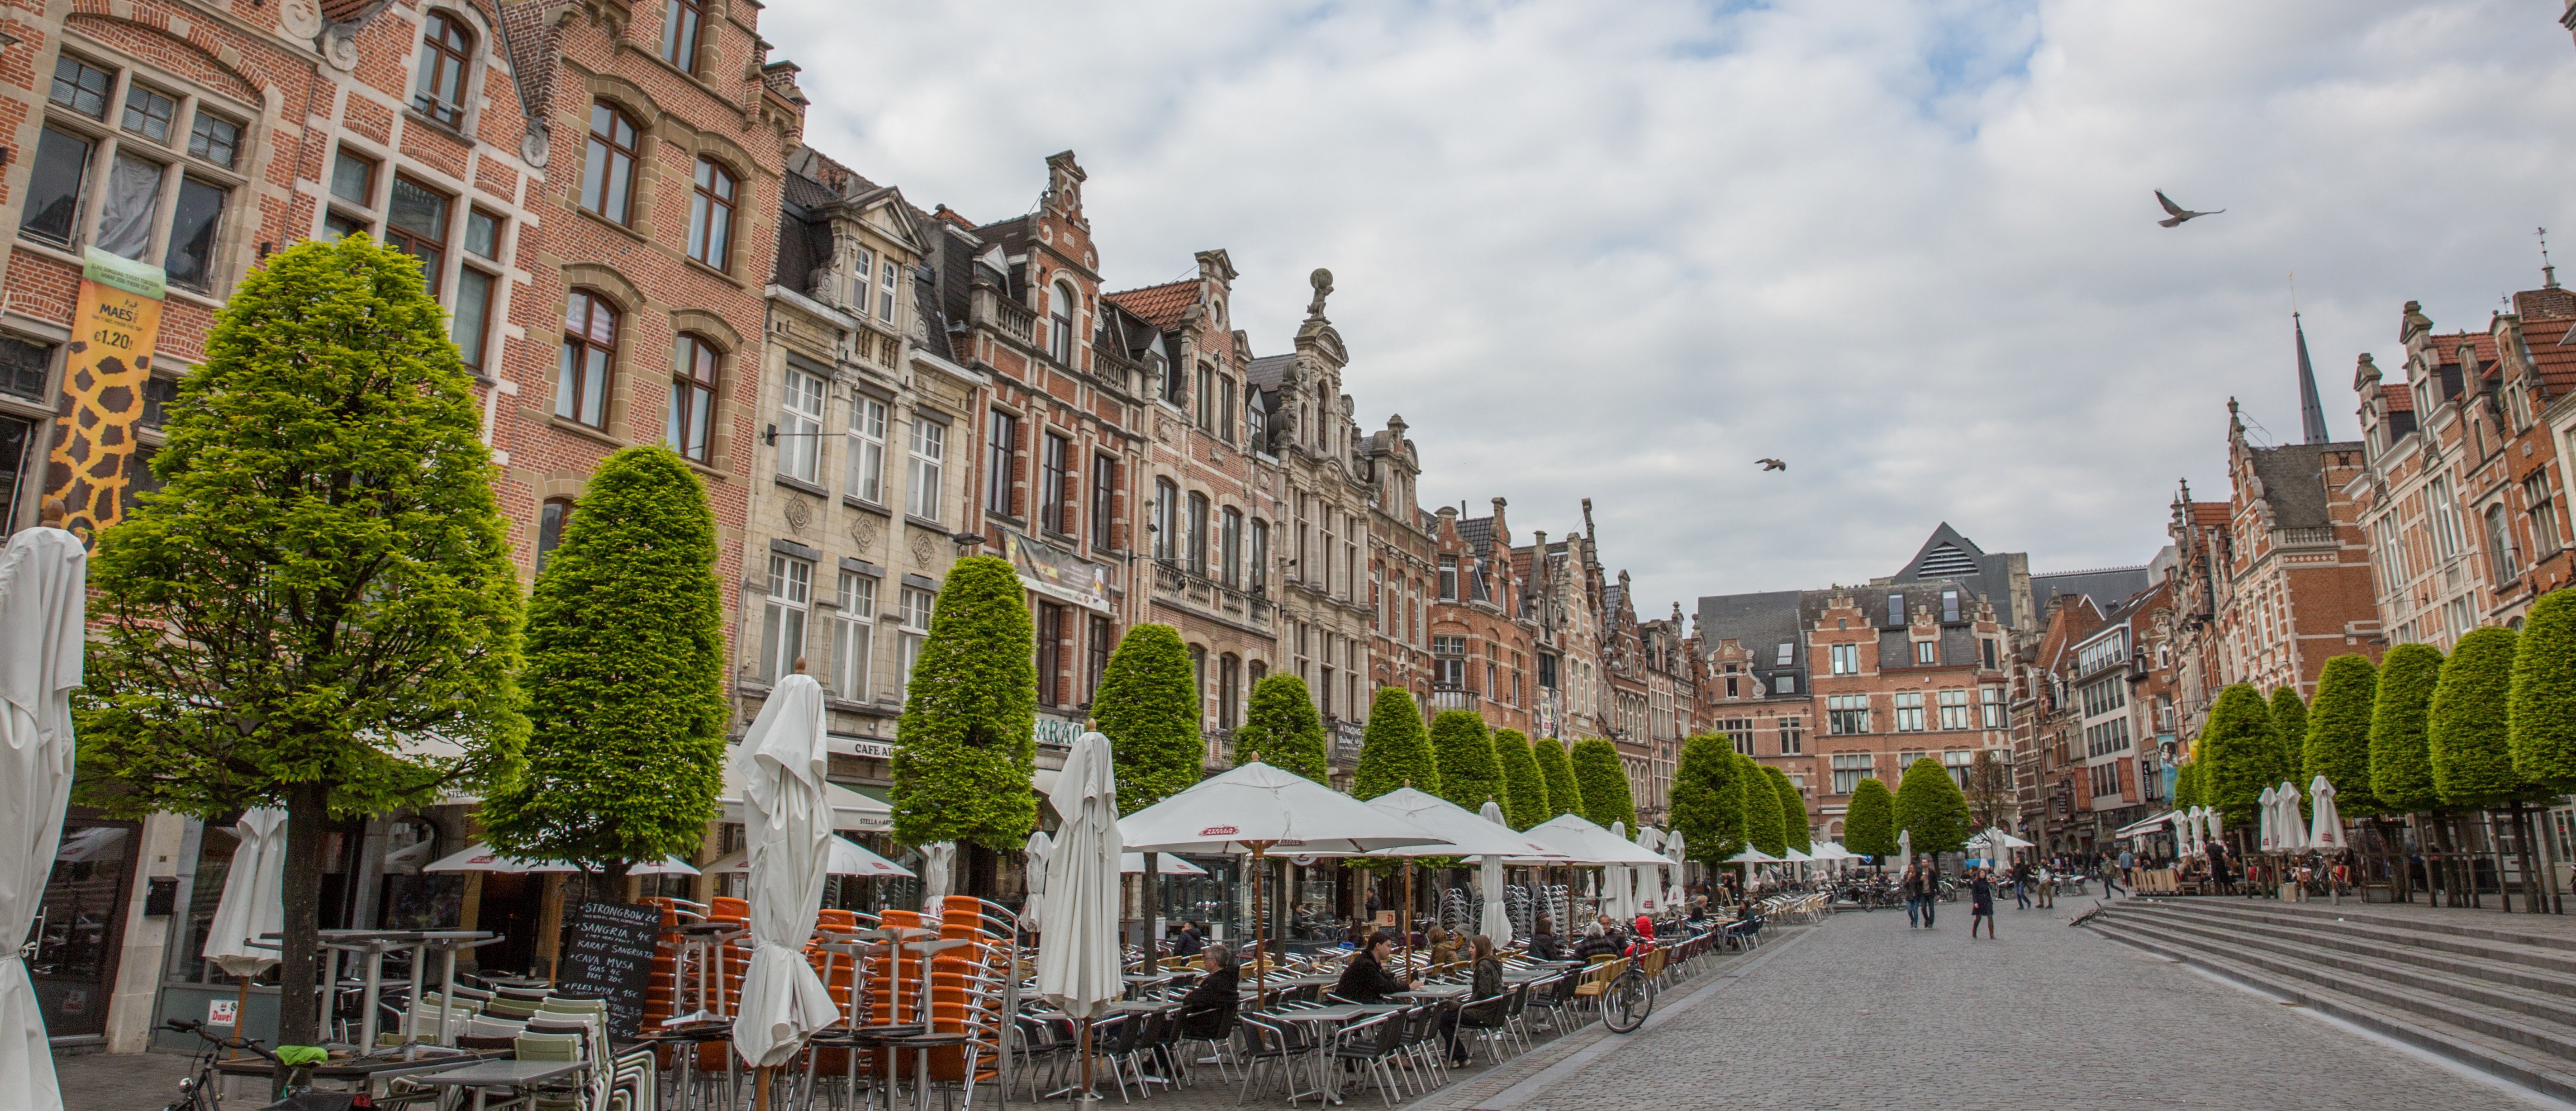 Restaurants in Oude markt in Leuven, Belgium. Photo by kevin liebens via unsplash